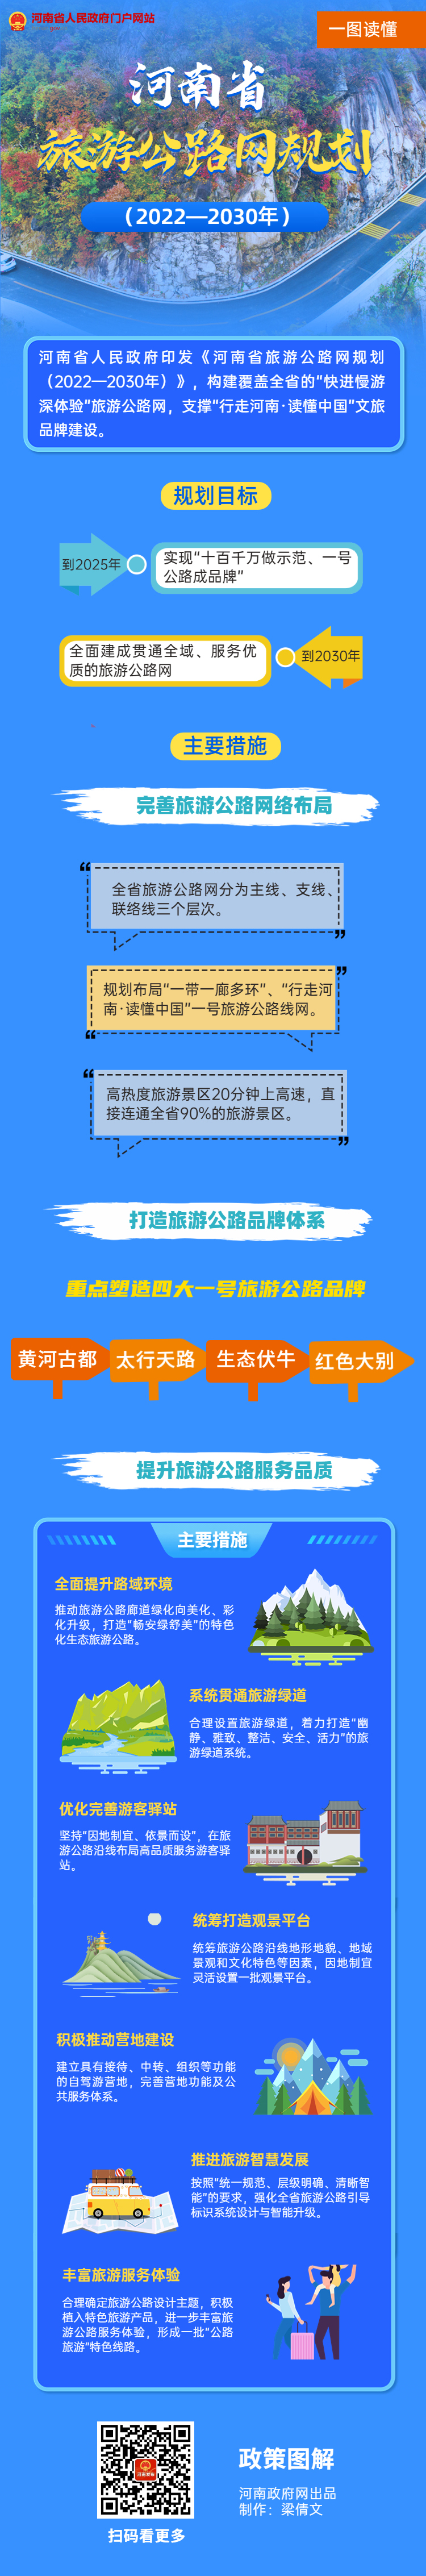 旅游出行景区景点行程宣传推广全屏竖版海报 (1).jpg